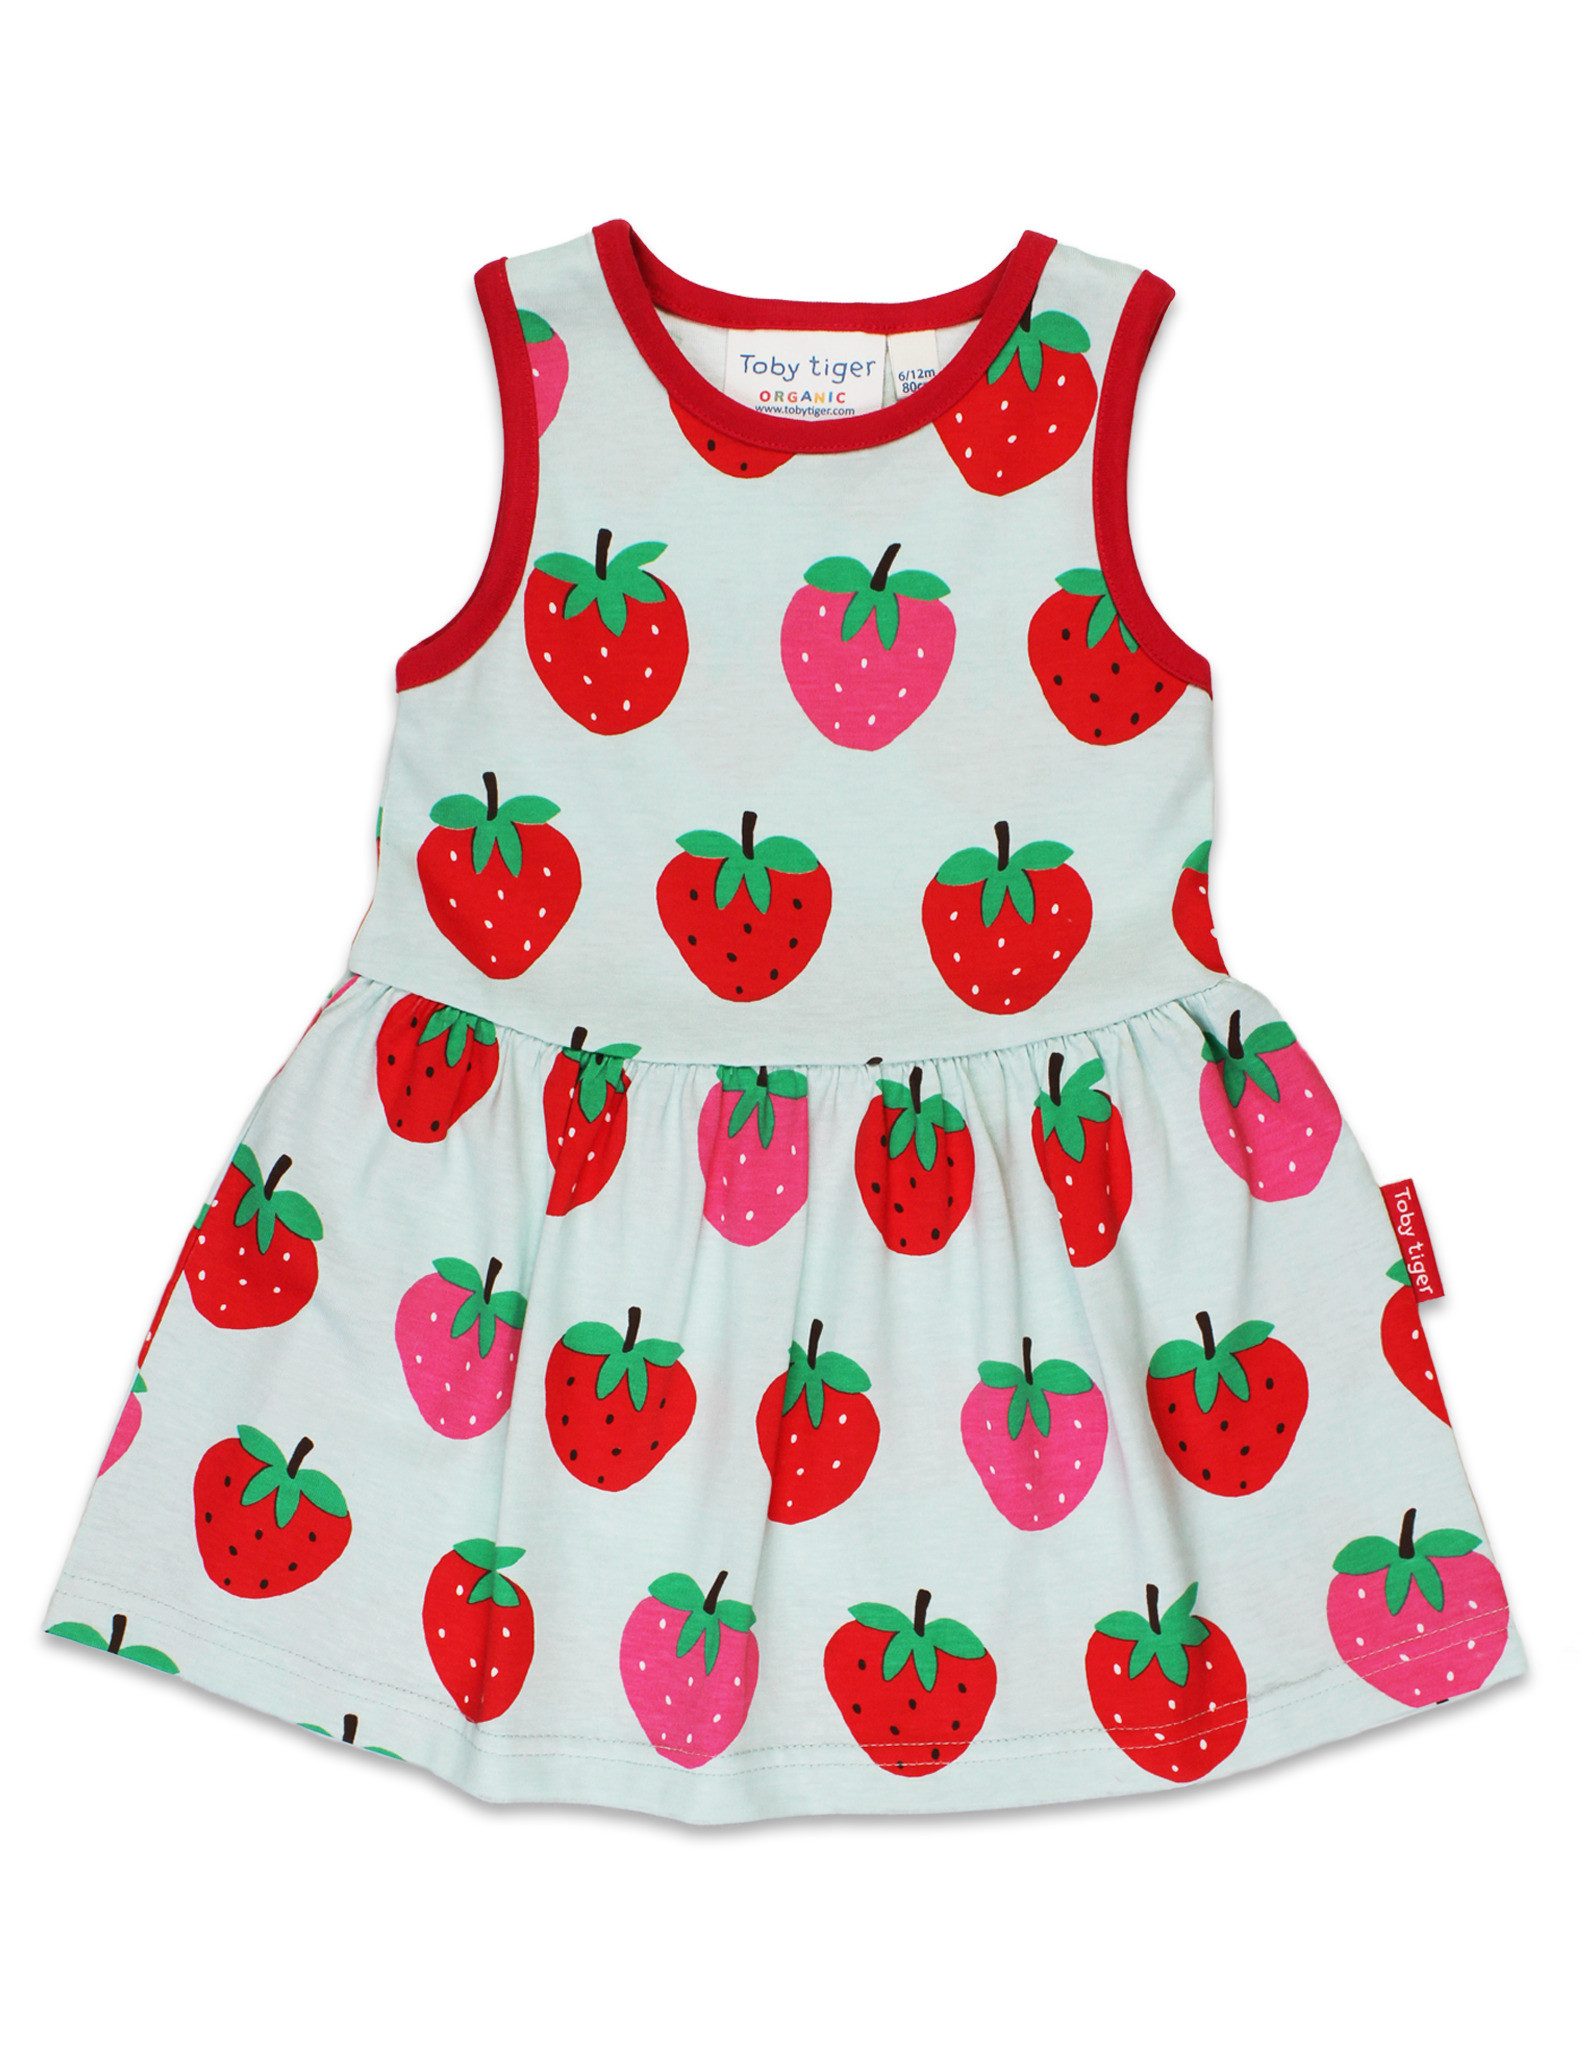 Toby Tiger Shirtkleid Sommerkleid mit Erdbeer Print